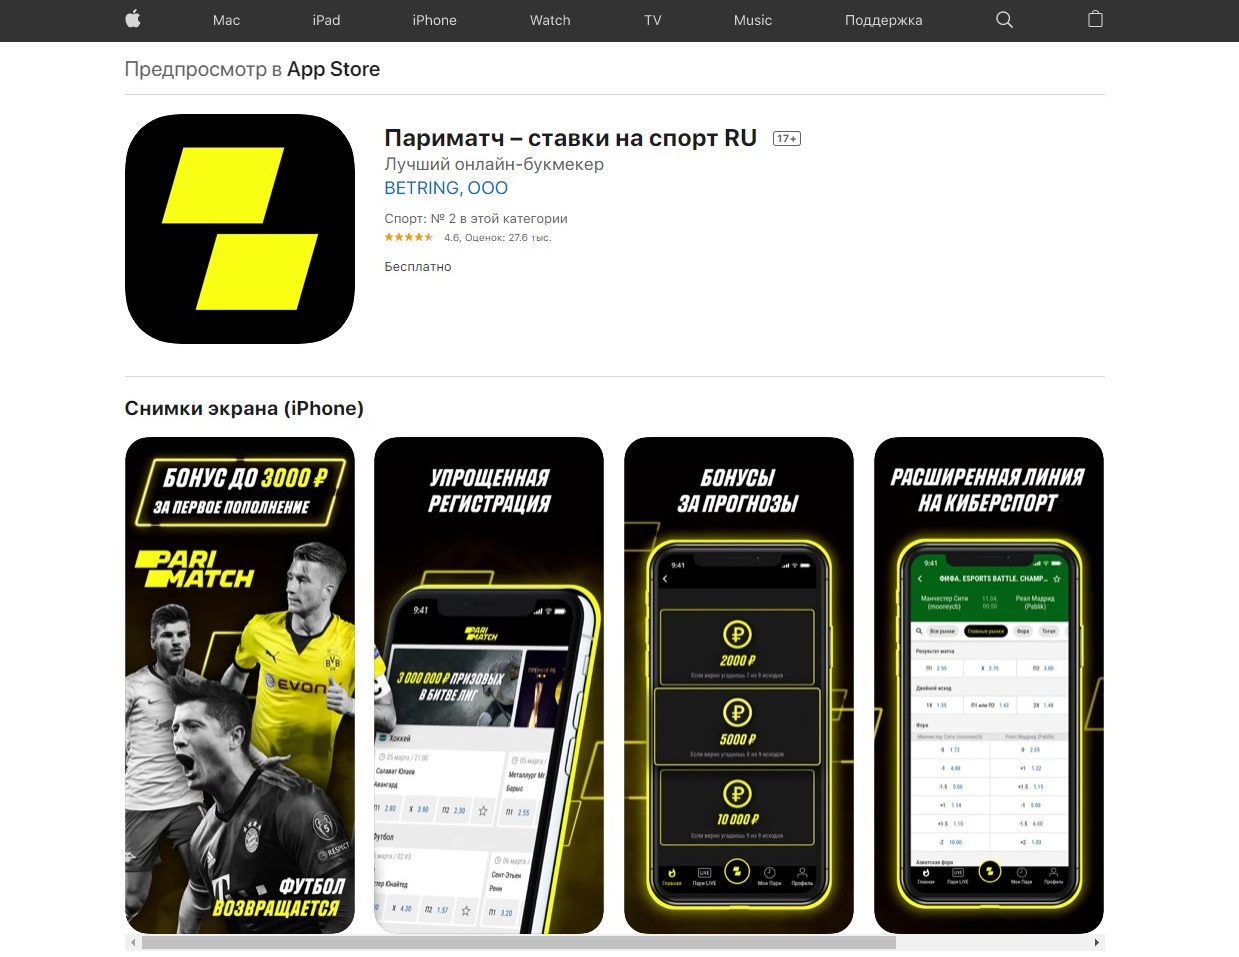 Приложение букмекера Париматч для iPhone (iOS) в App Store